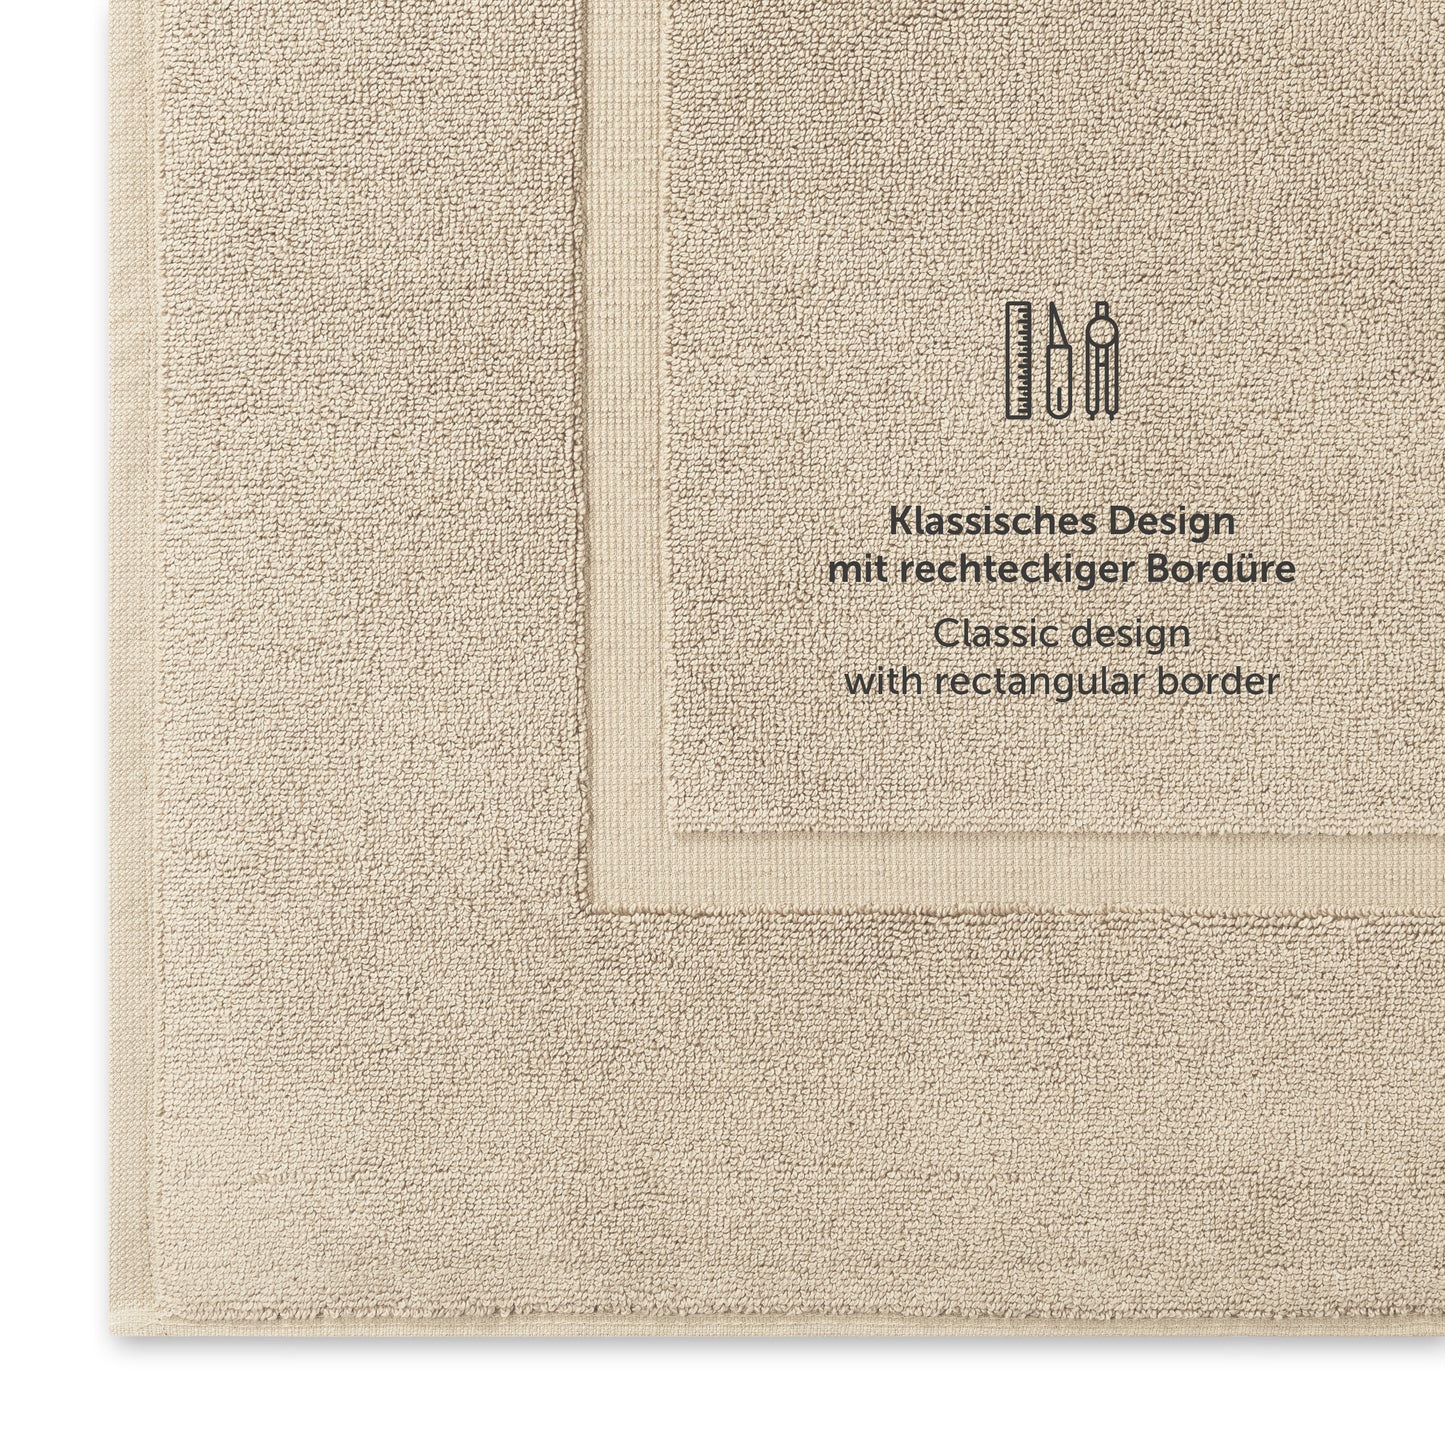 Beige Handtuch mit klassischem Design und Bordürendetail.